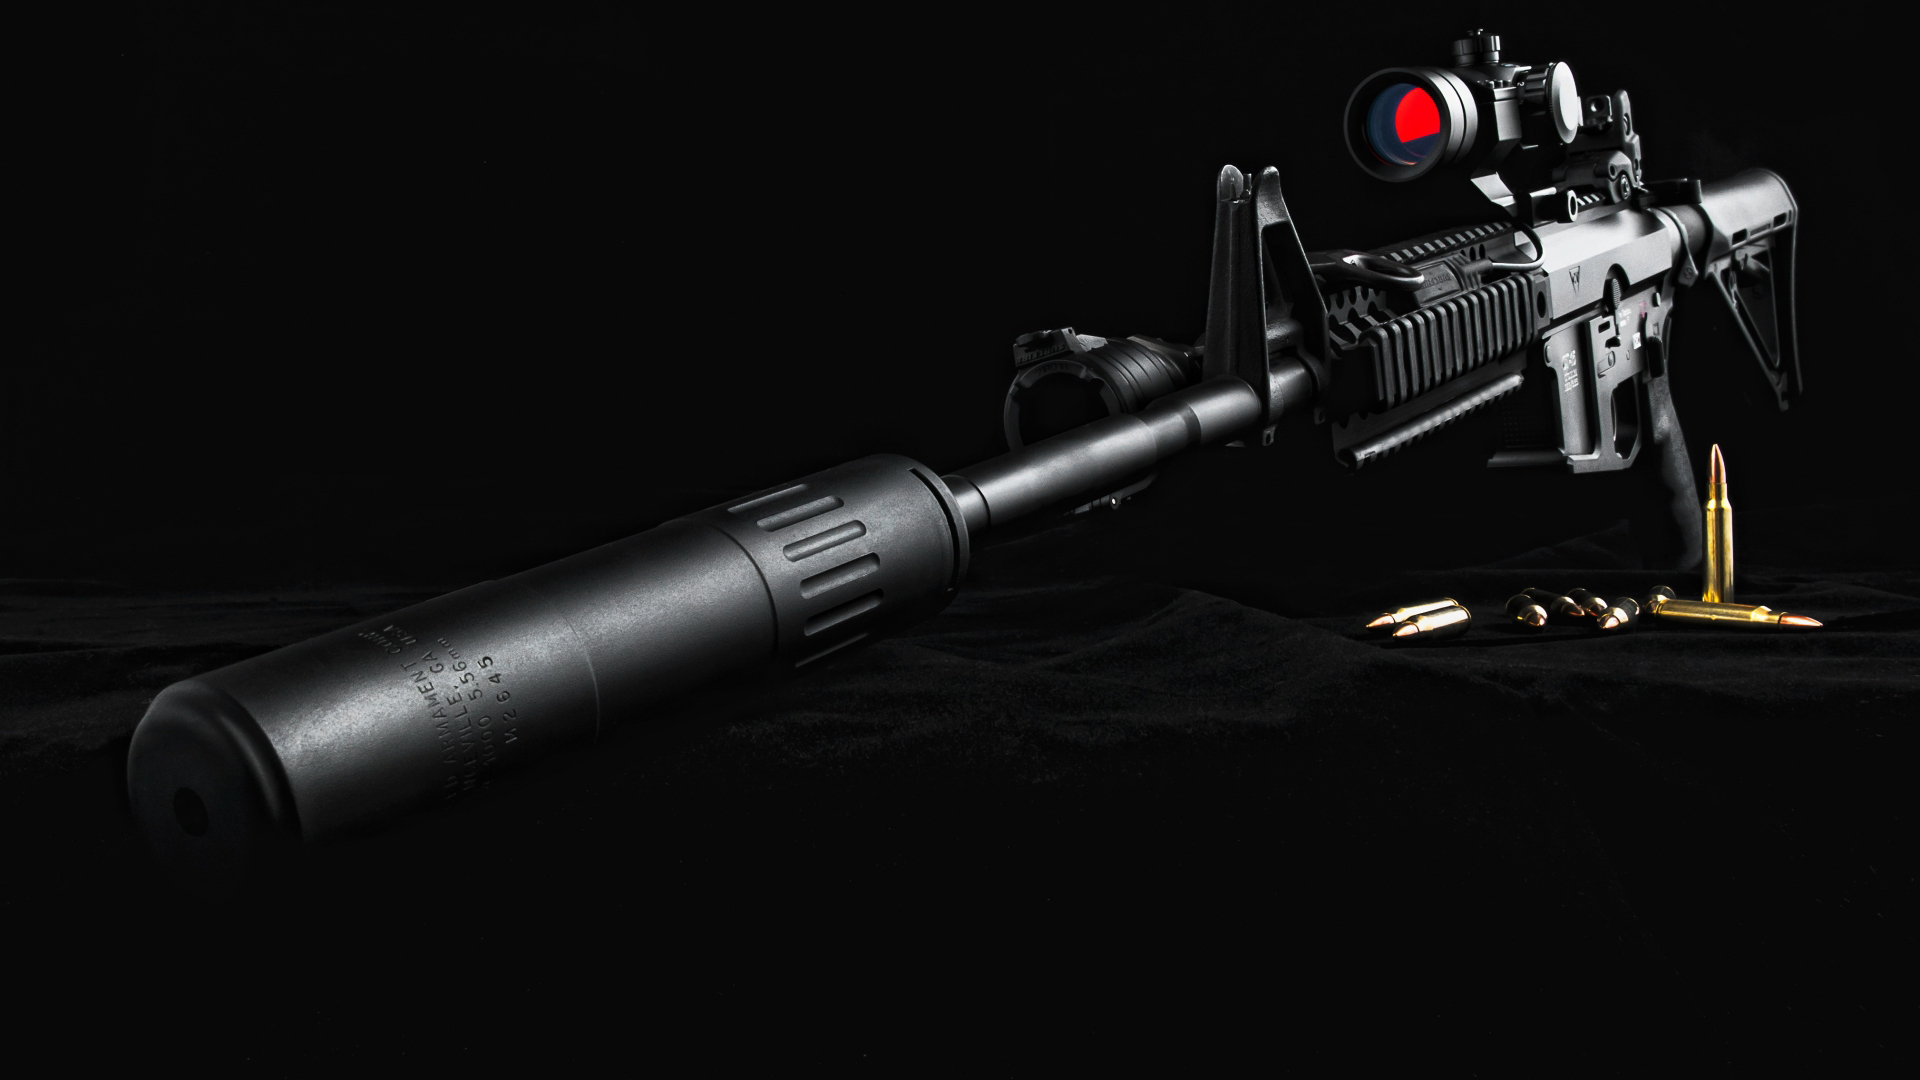 gun wallpaper hd 1080p,gun,air gun,gun barrel,airsoft gun,optical instrument